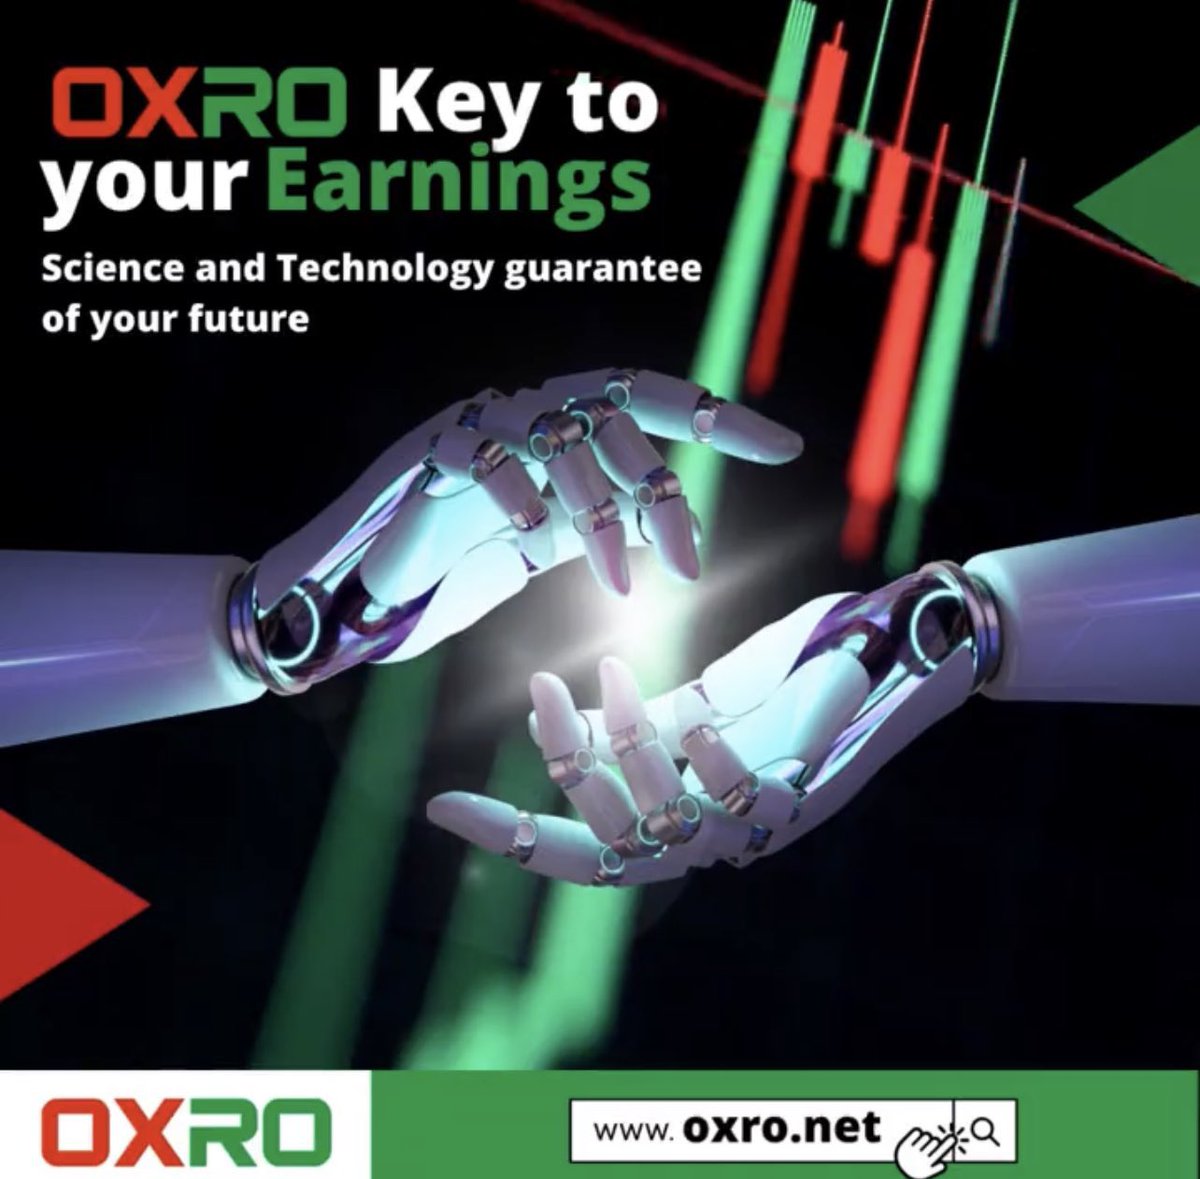 #OXRO, otomatik alım-satım işlemlerini gerçekleştirerek yatırımcıların kararlarını kolaylaştırır.

oxro.net 

#bitcoin          #dxgm  #btc          #bigone #binance         #coinbase #crypyo #nft #gateio #kraken #kucoin #mexc #OXRO